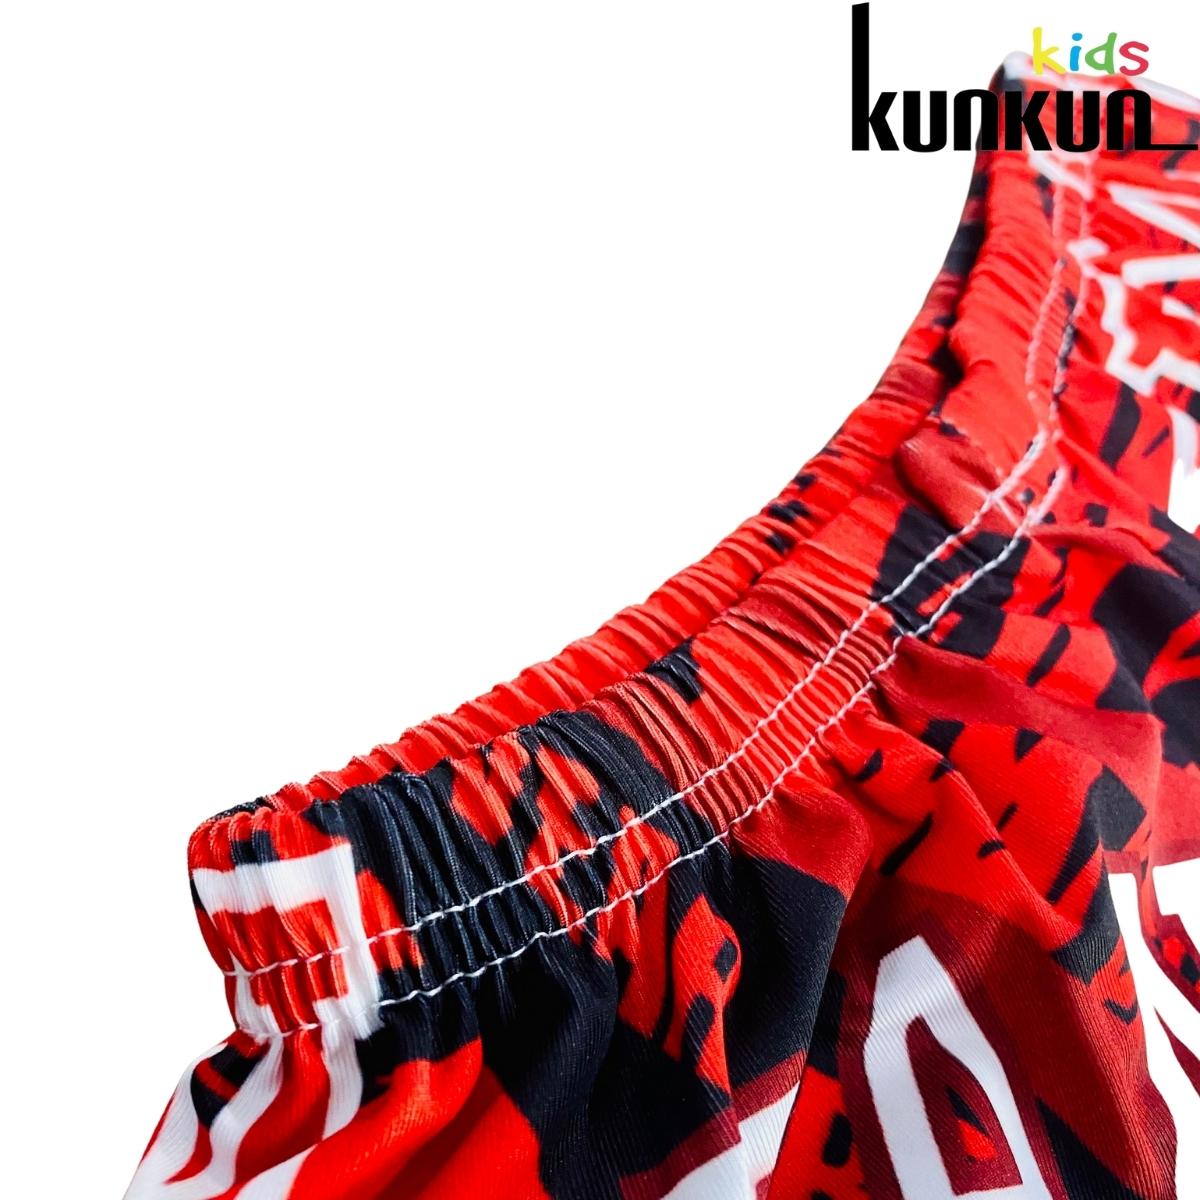 Bộ thể thao bé trai KUNKUN KID TT003 tay ngắn hình số 23 chất thun lạnh thoáng mát - Quần áo bé trai size đại từ 10-60kg